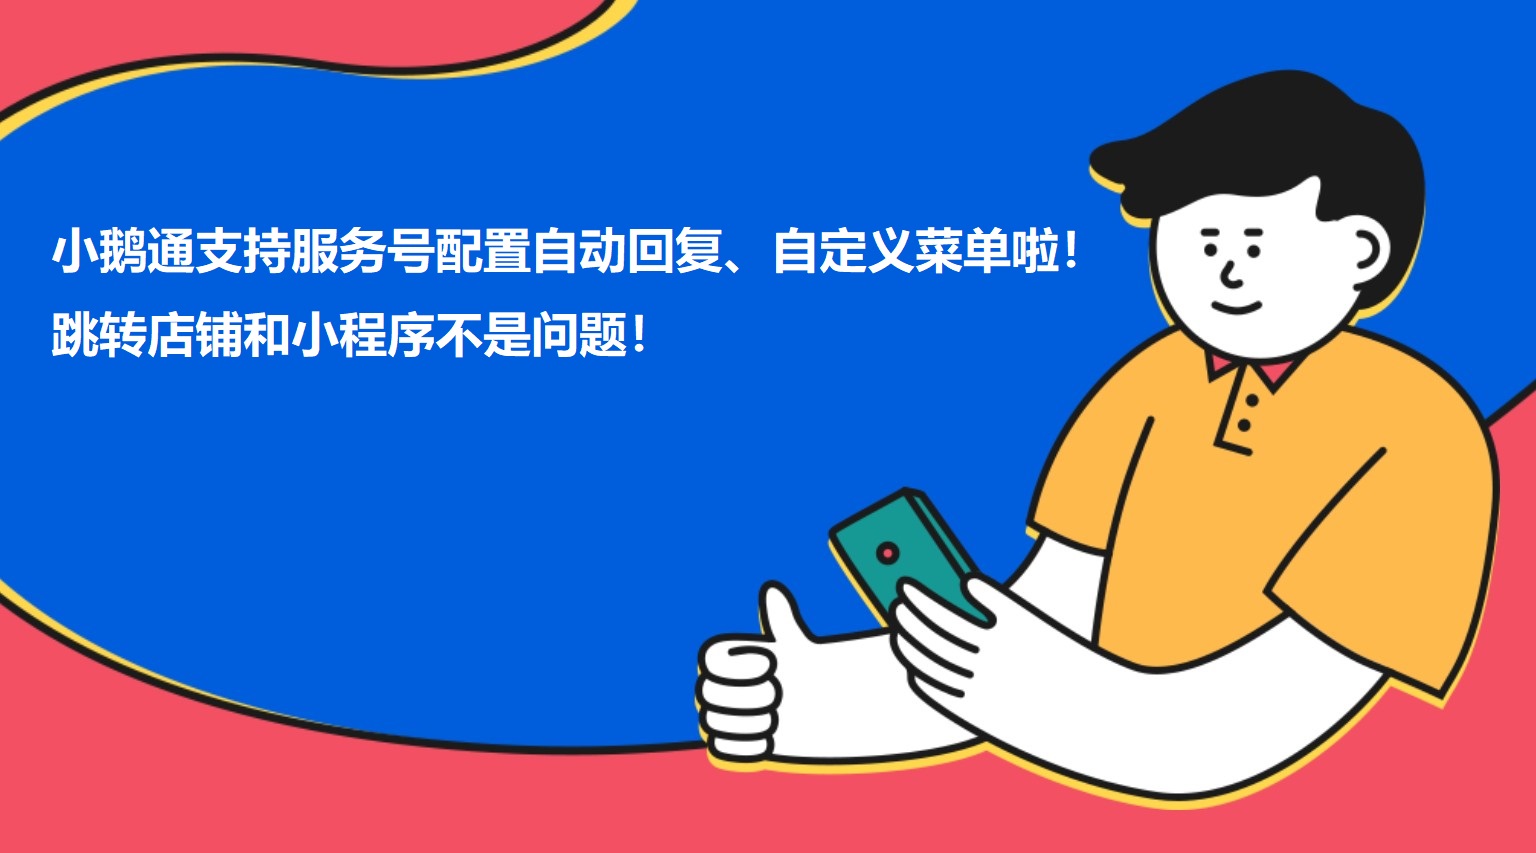 北京小鹅通支持服务号配置自动回复、自定义菜单啦！跳转店铺和小程序不是问题！